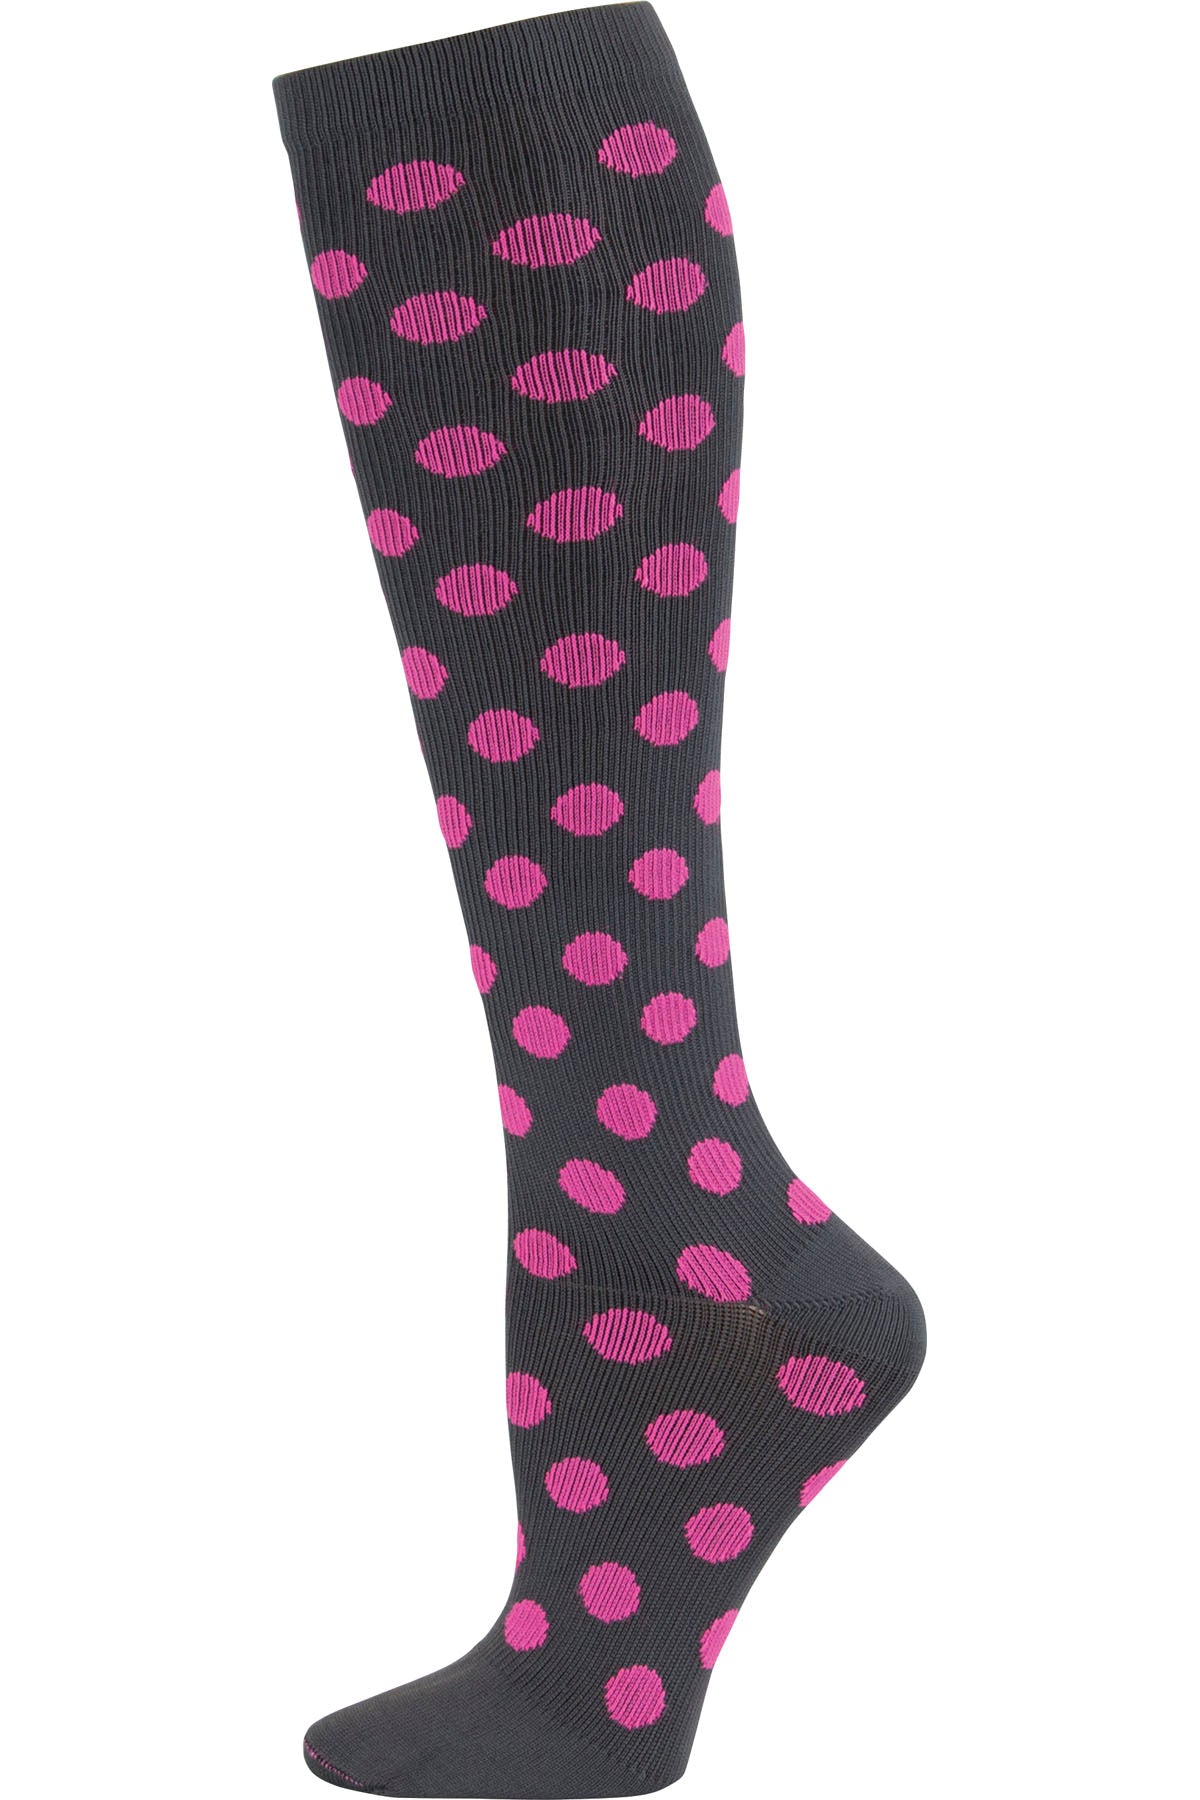 Regular Fit - Compression Socks 10-15mmHg Compression Socks Cherokee Legwear Grey/Pink Polka Dot  